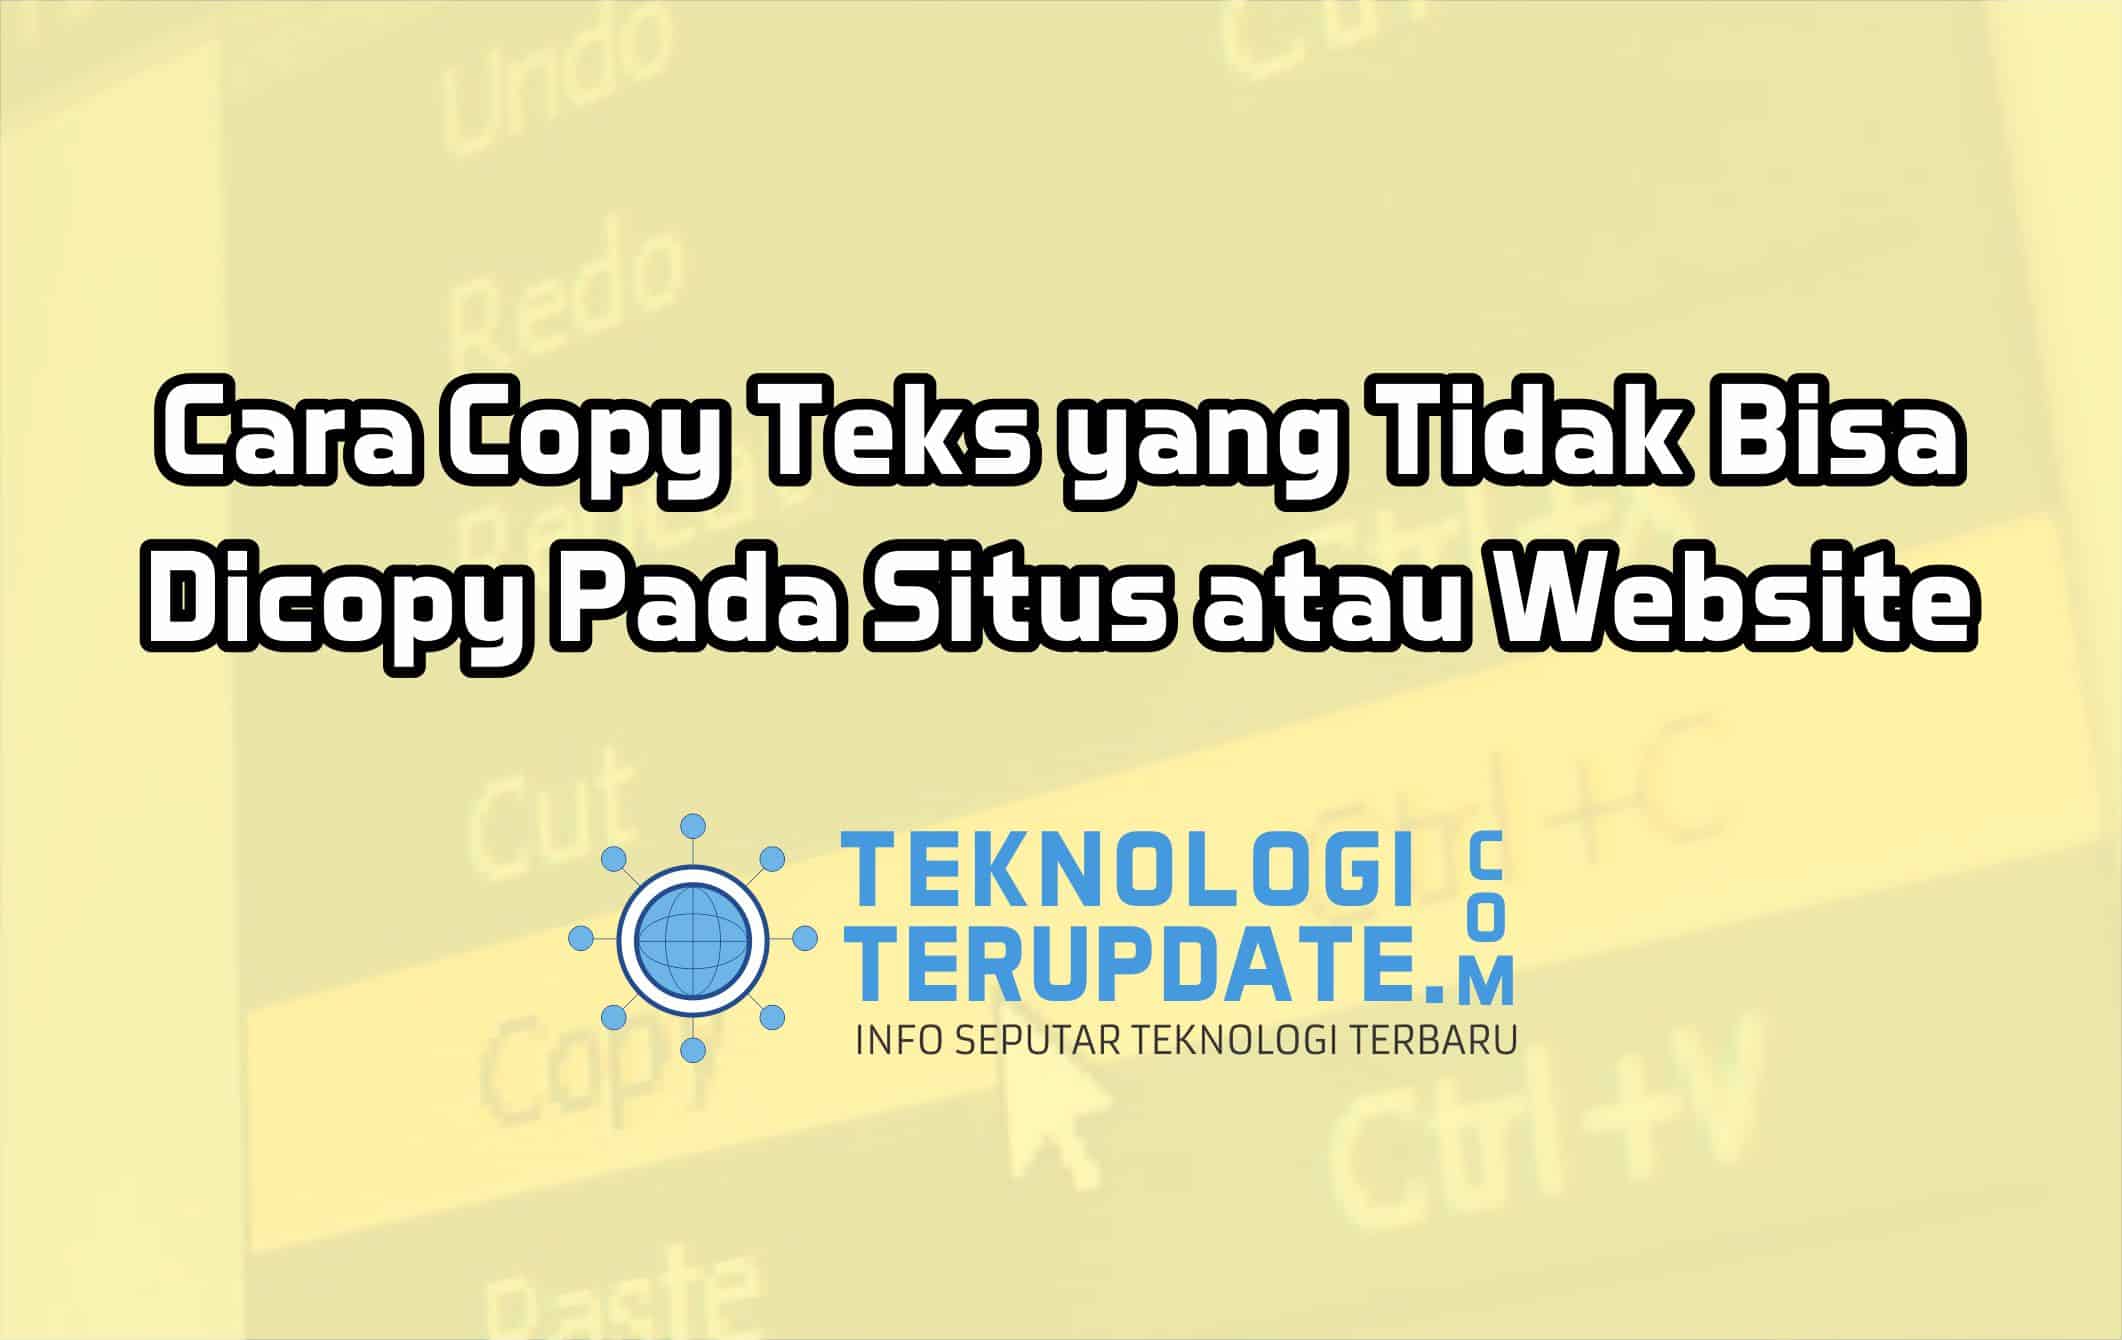 Cara Copy Teks yang Tidak Bisa Dicopy Pada Situs atau Website